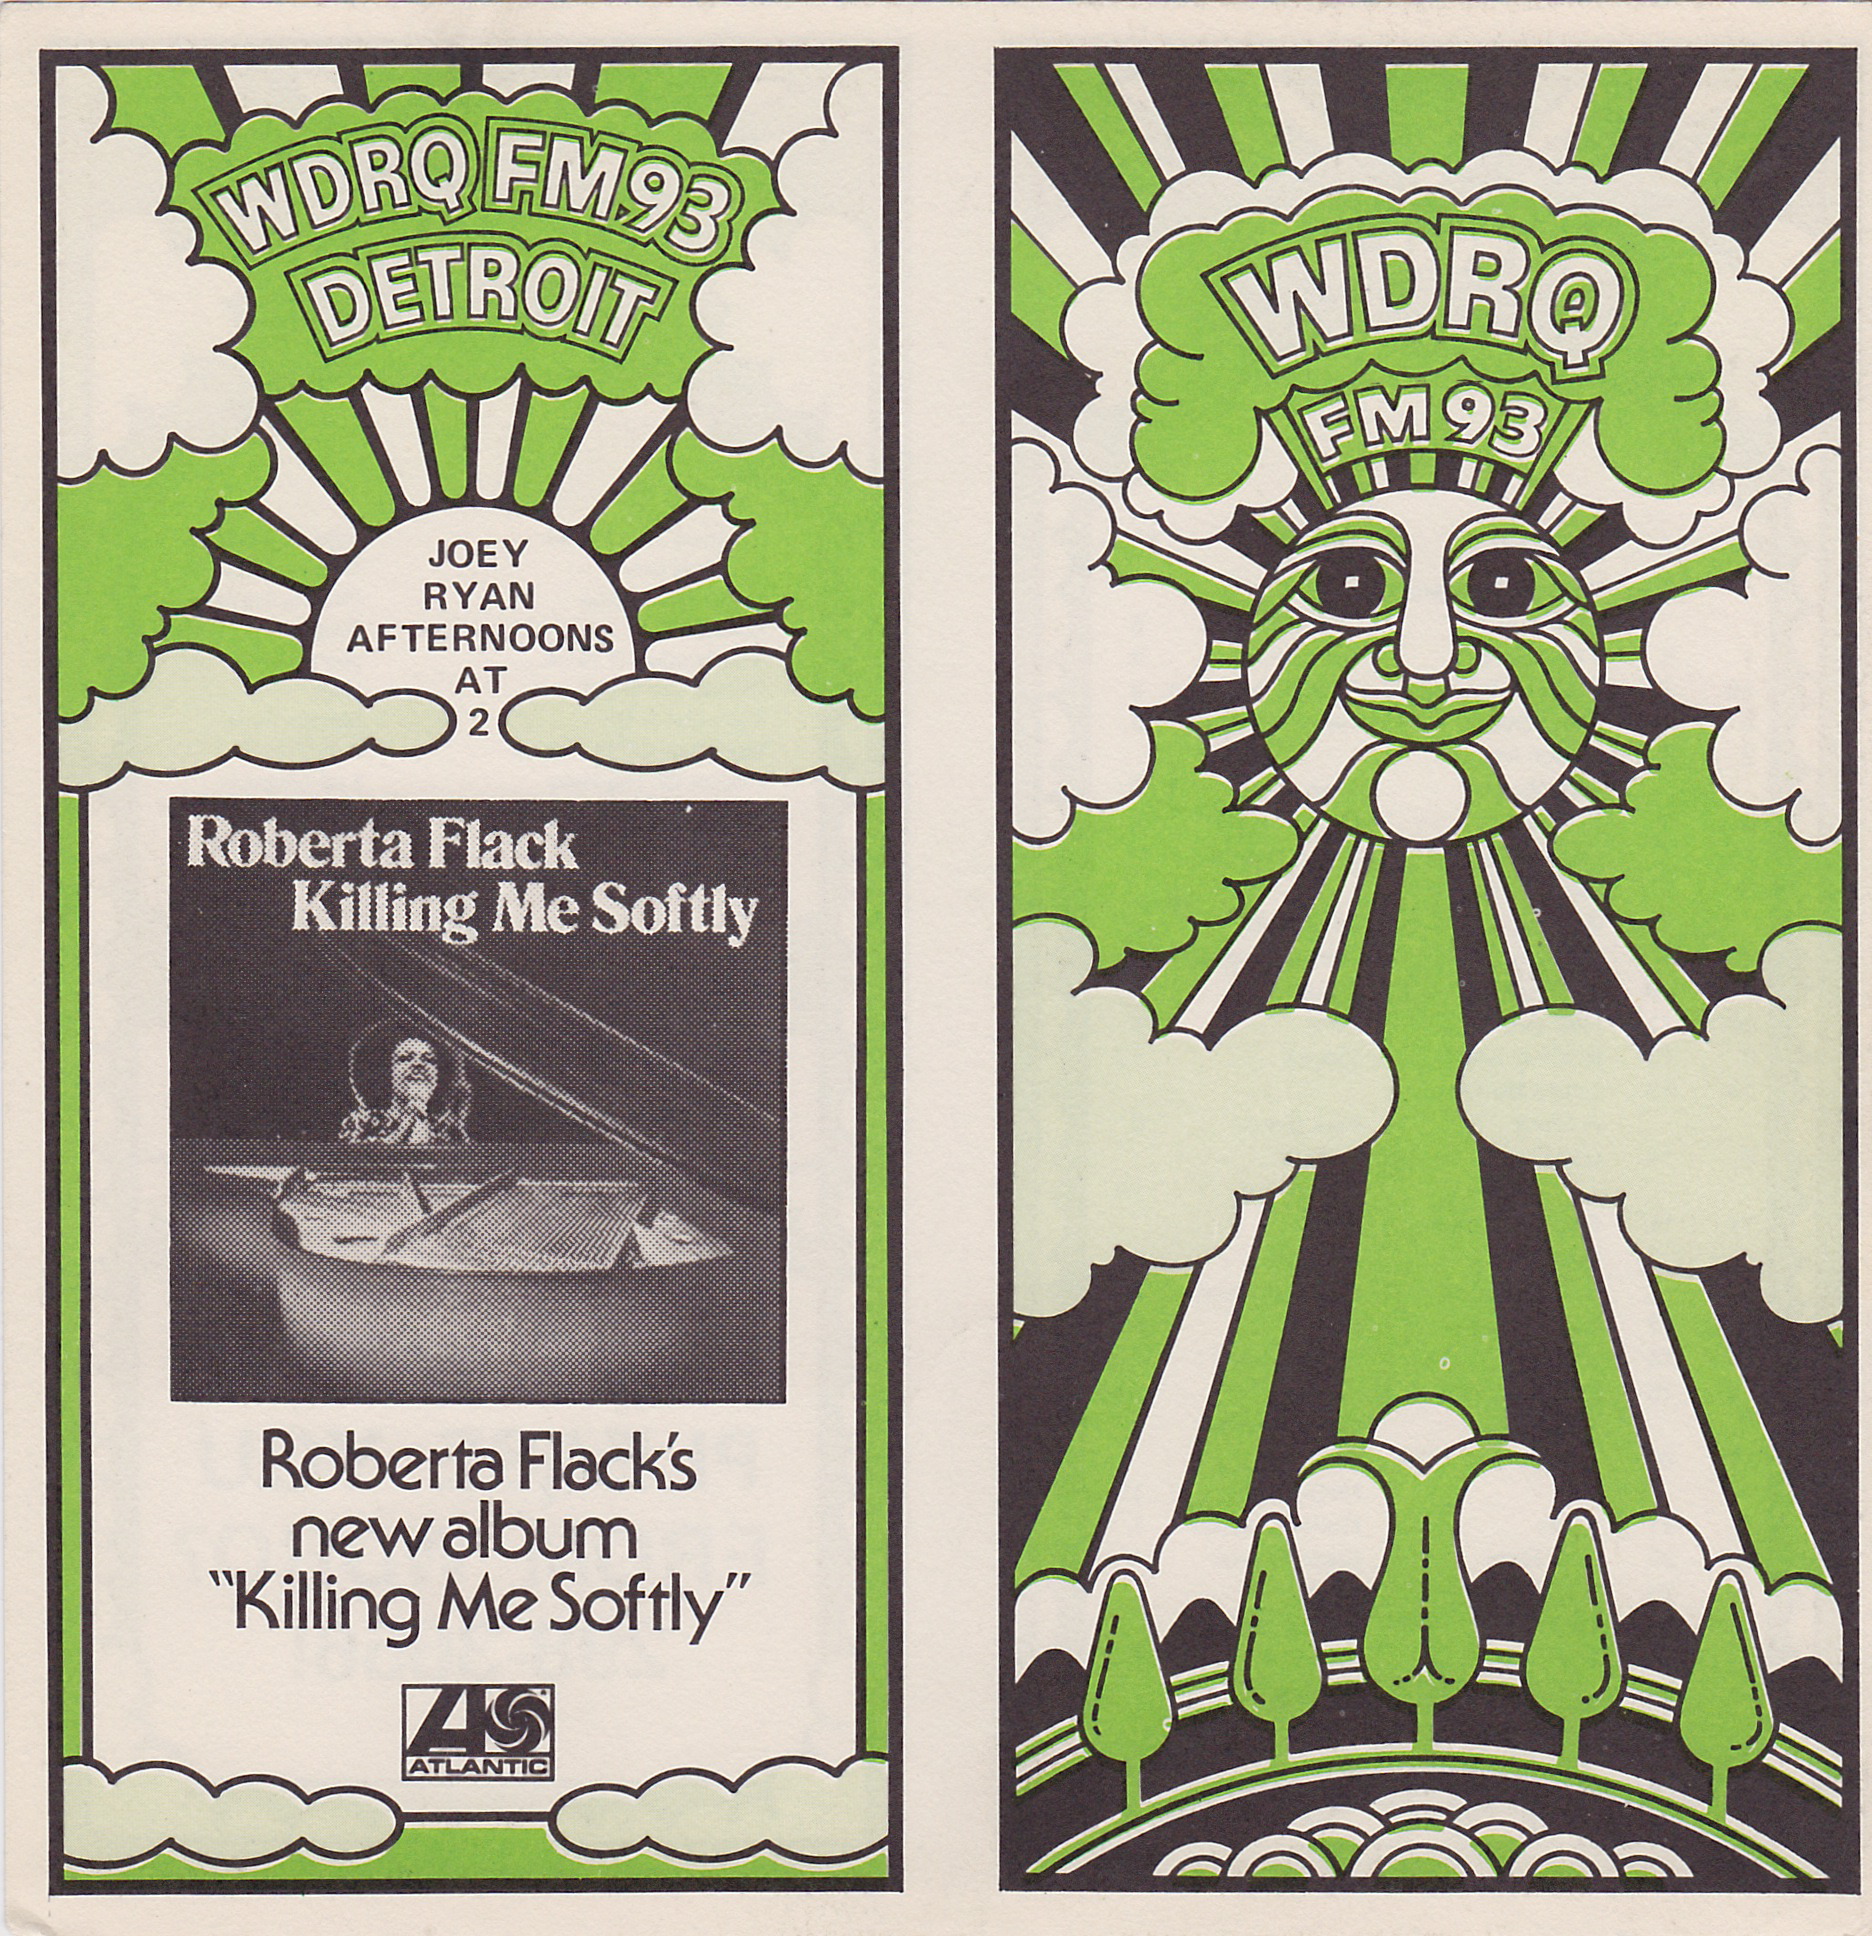 WDRQ - SEPTEMBER 24, 1973 - FRONT & BACK